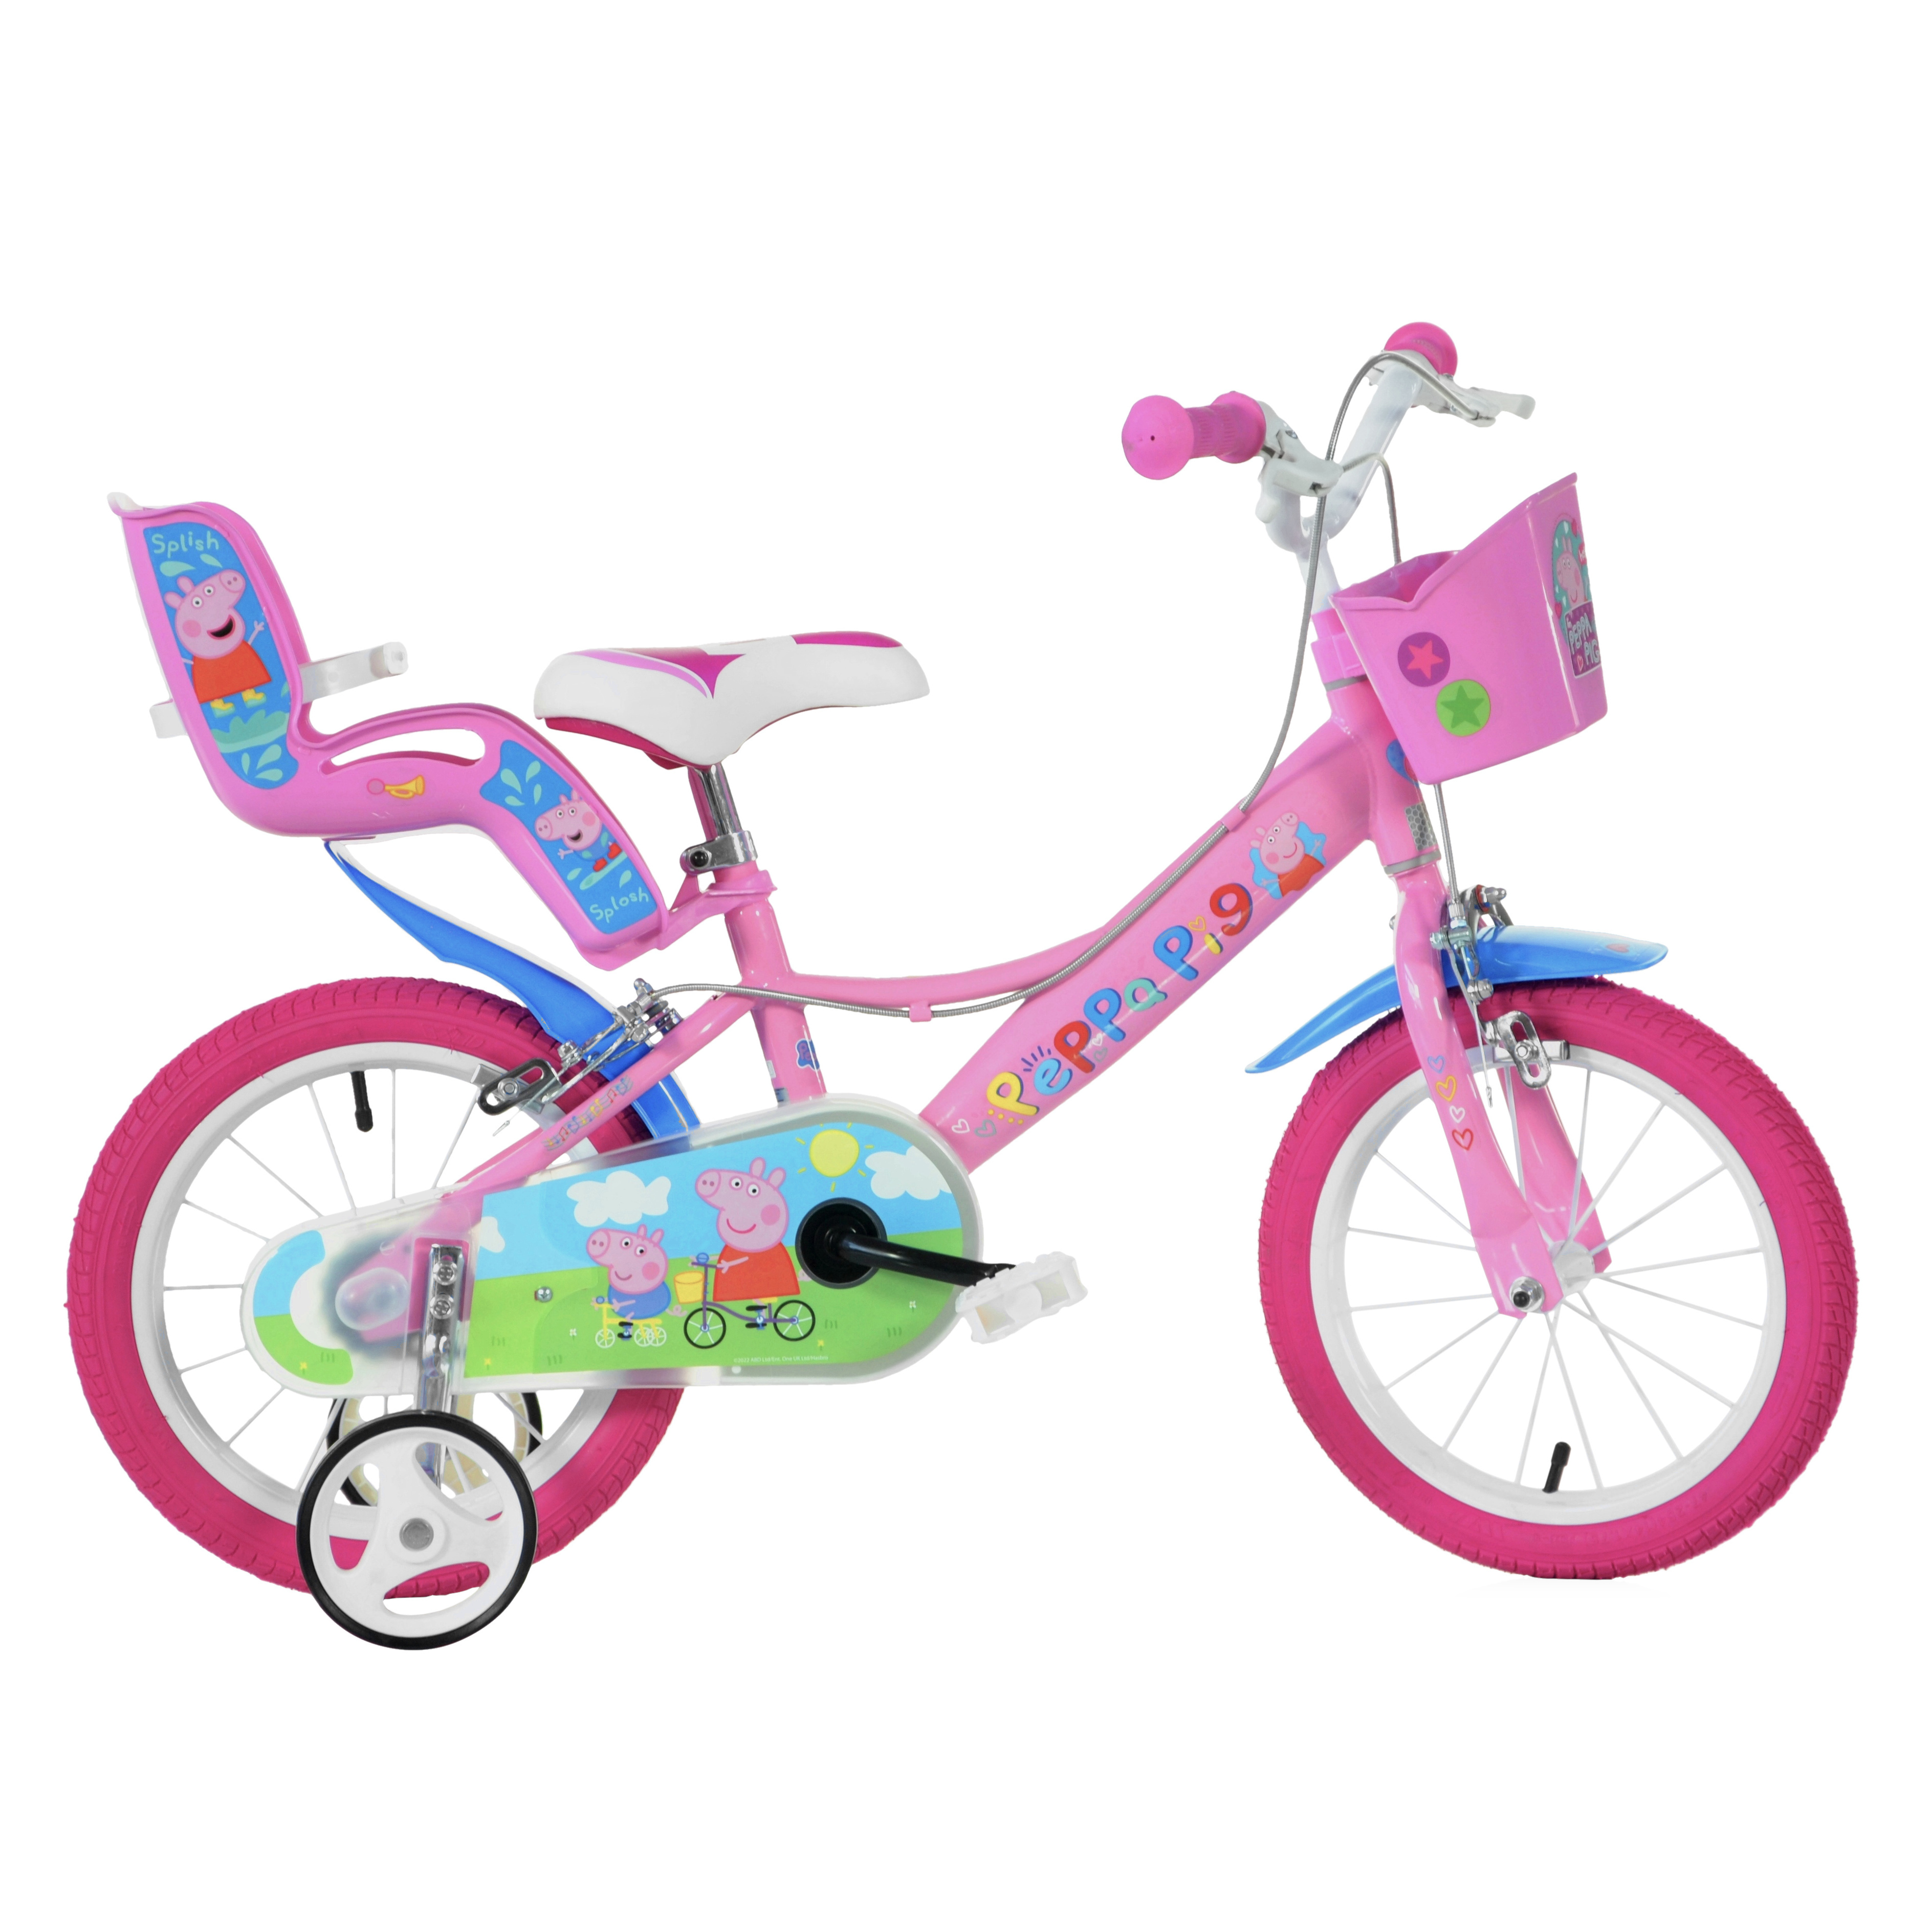 Bicicleta 16 Pulgadas Peppa Pig Rosado 5-7 Años - rosa - 